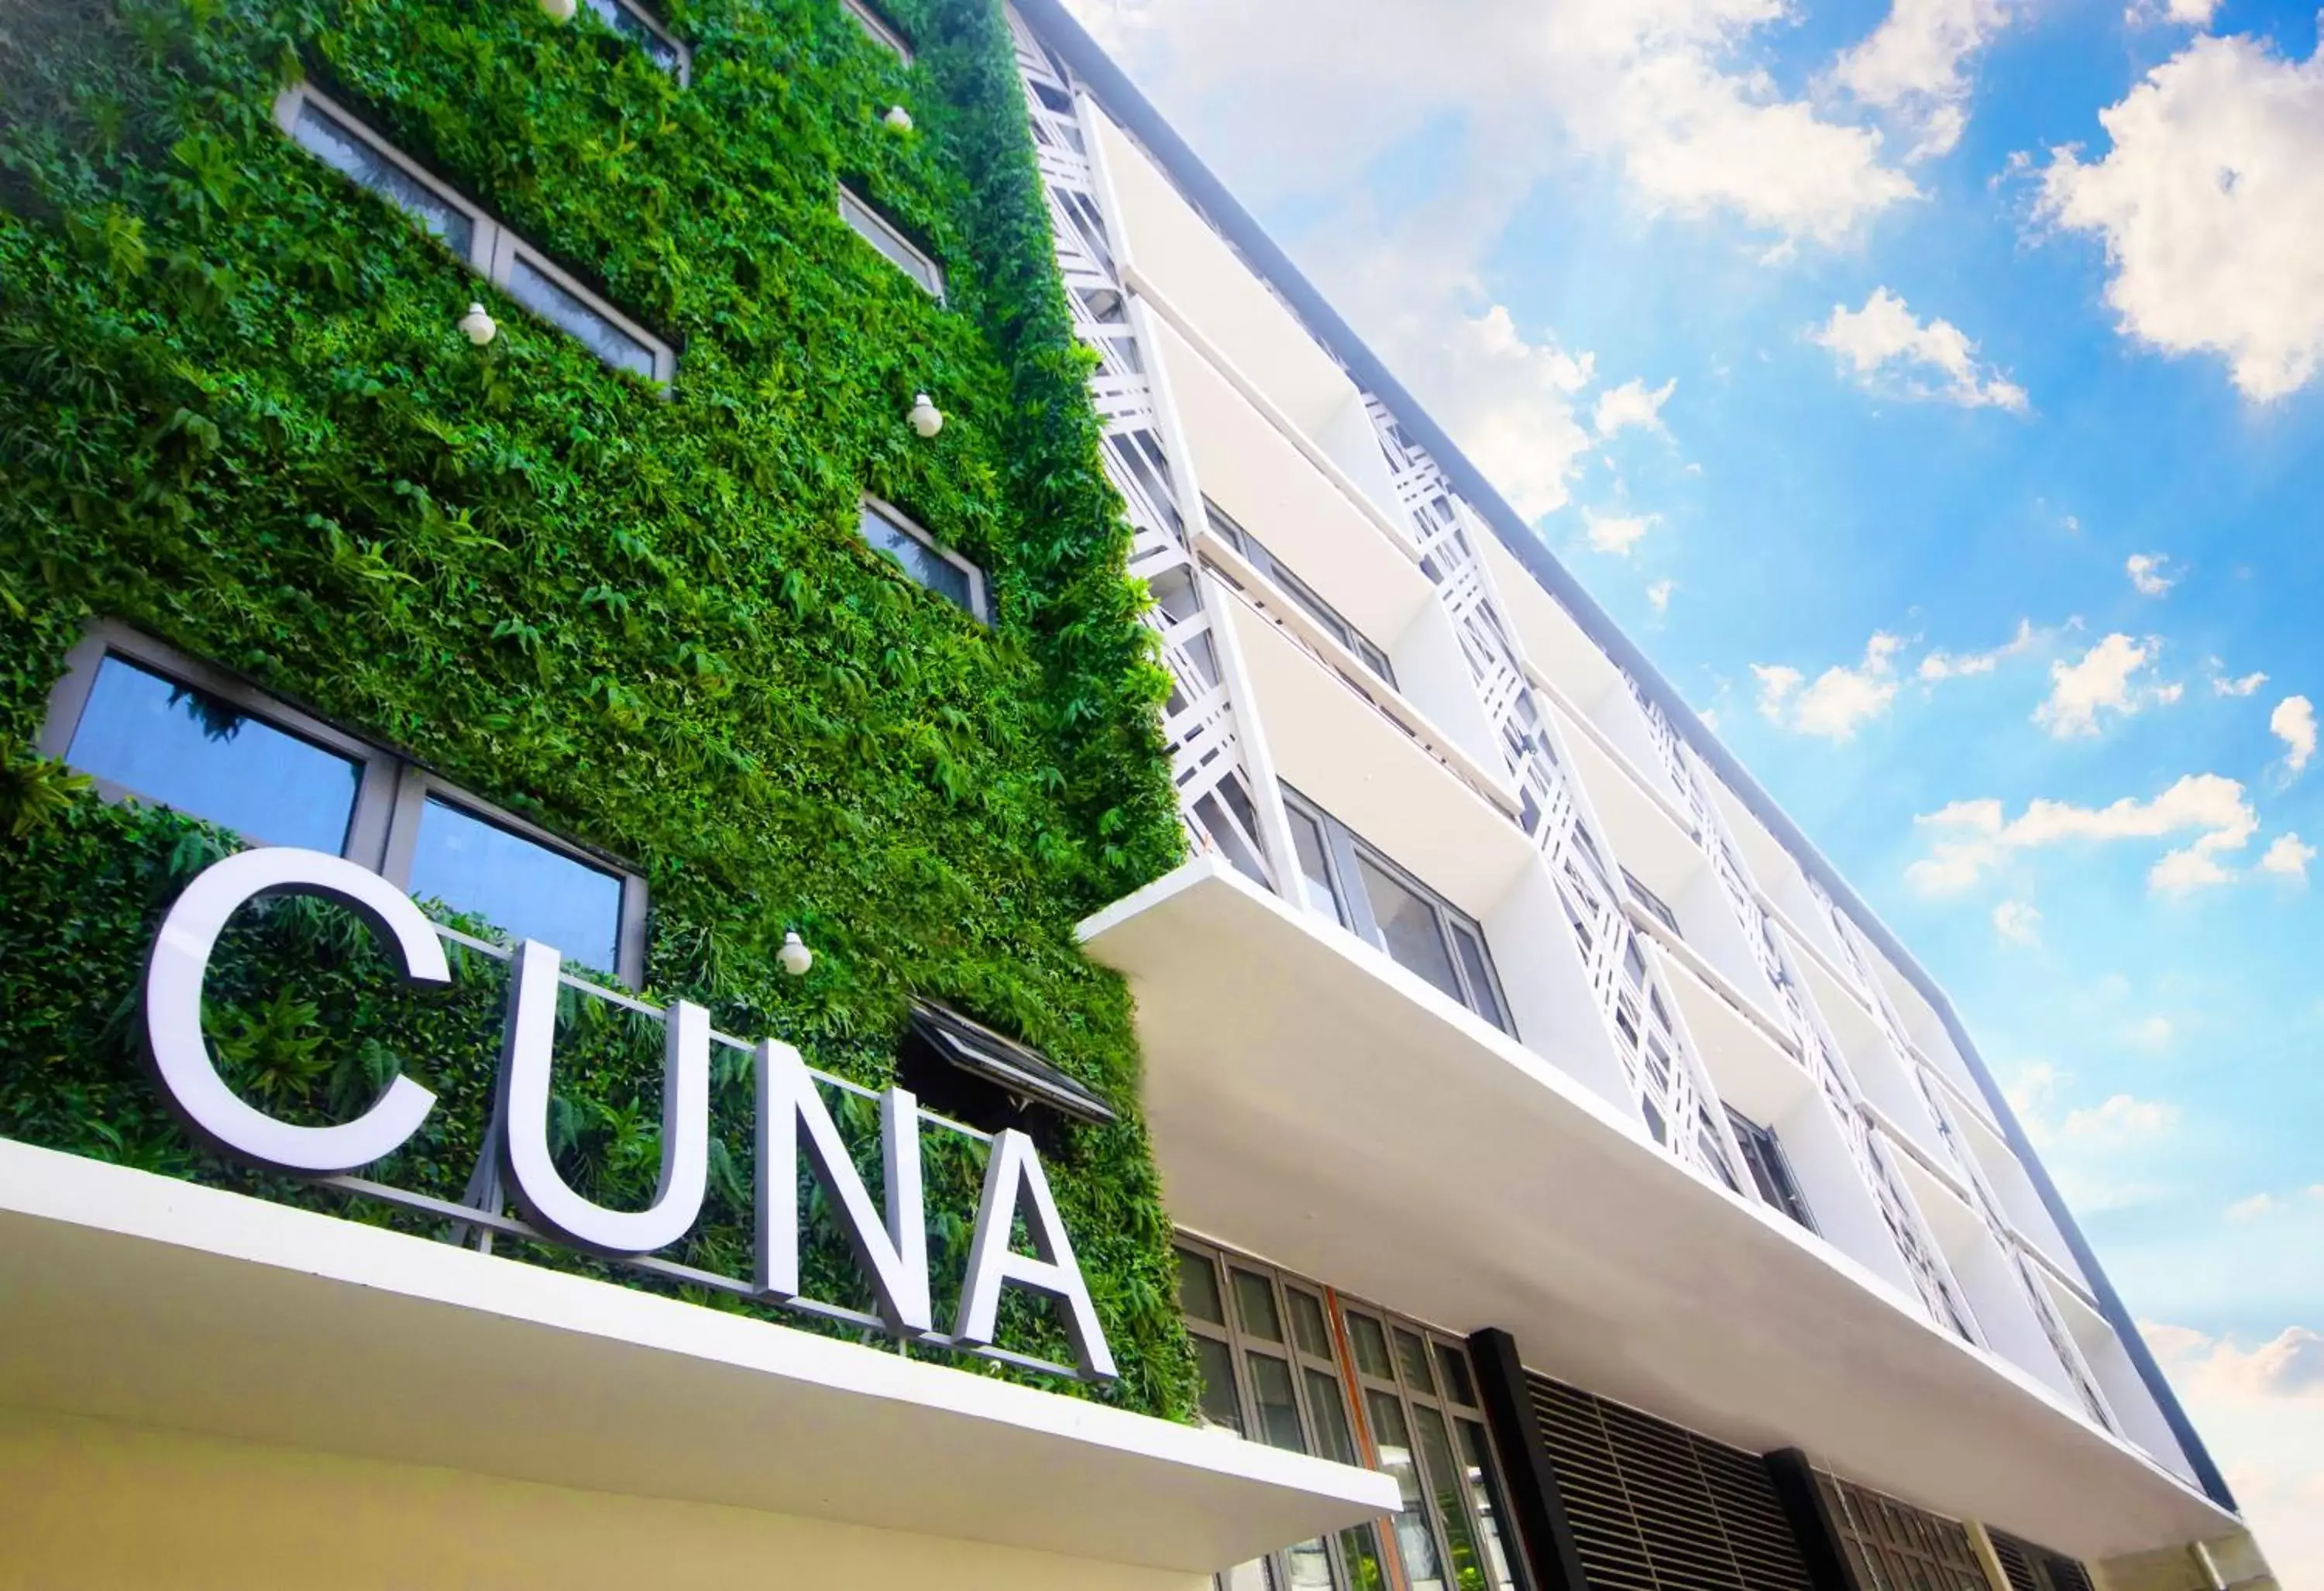 Property Building in Cuna Hotel